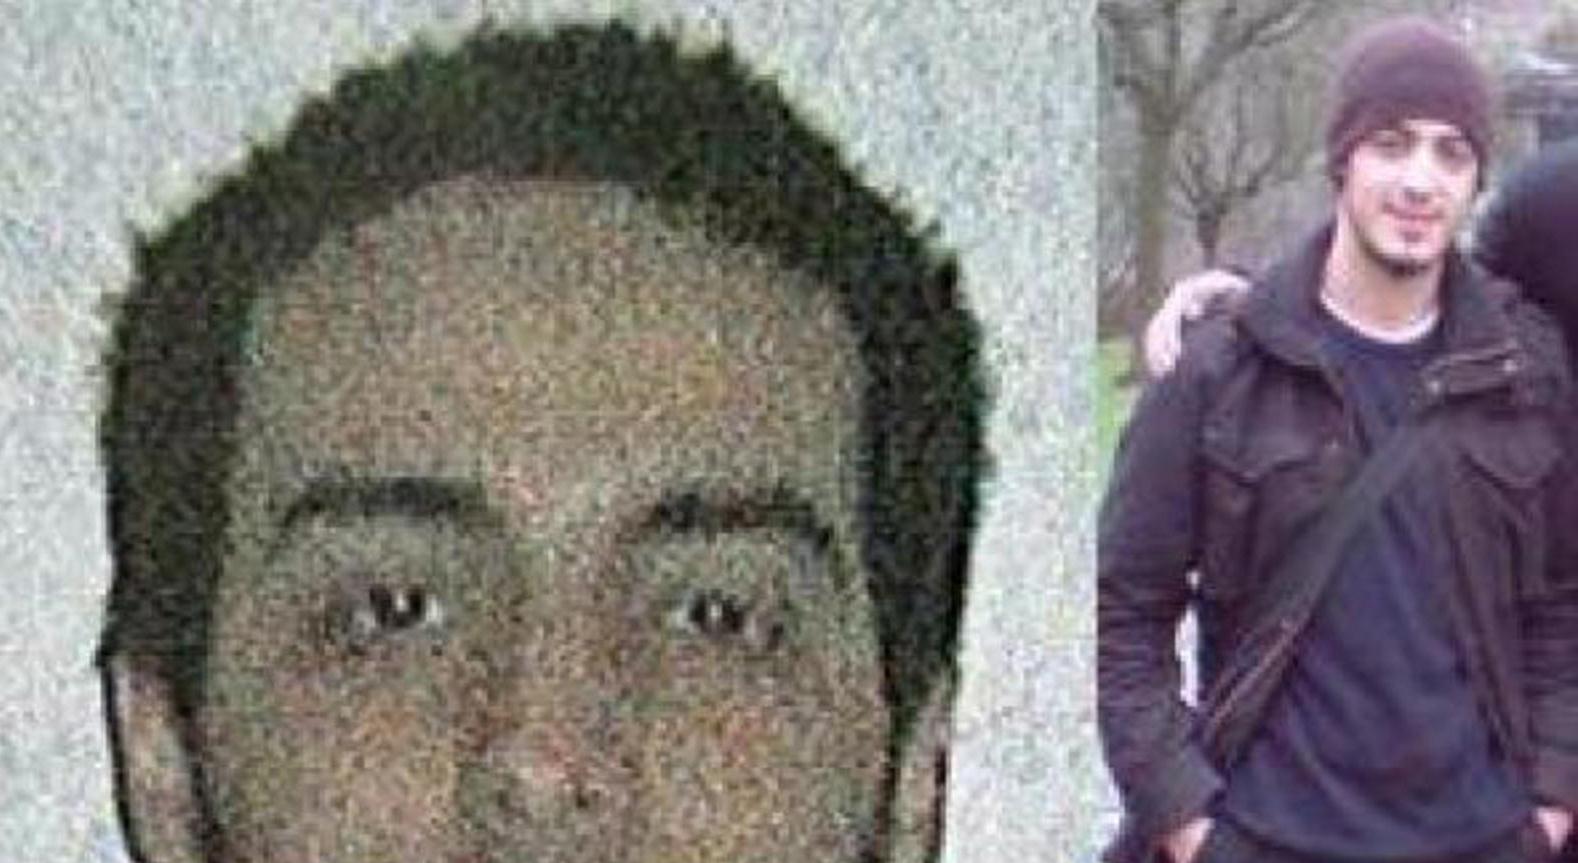 نجيم العشراوي المشتبه به الثالث في هجمات بروكسل